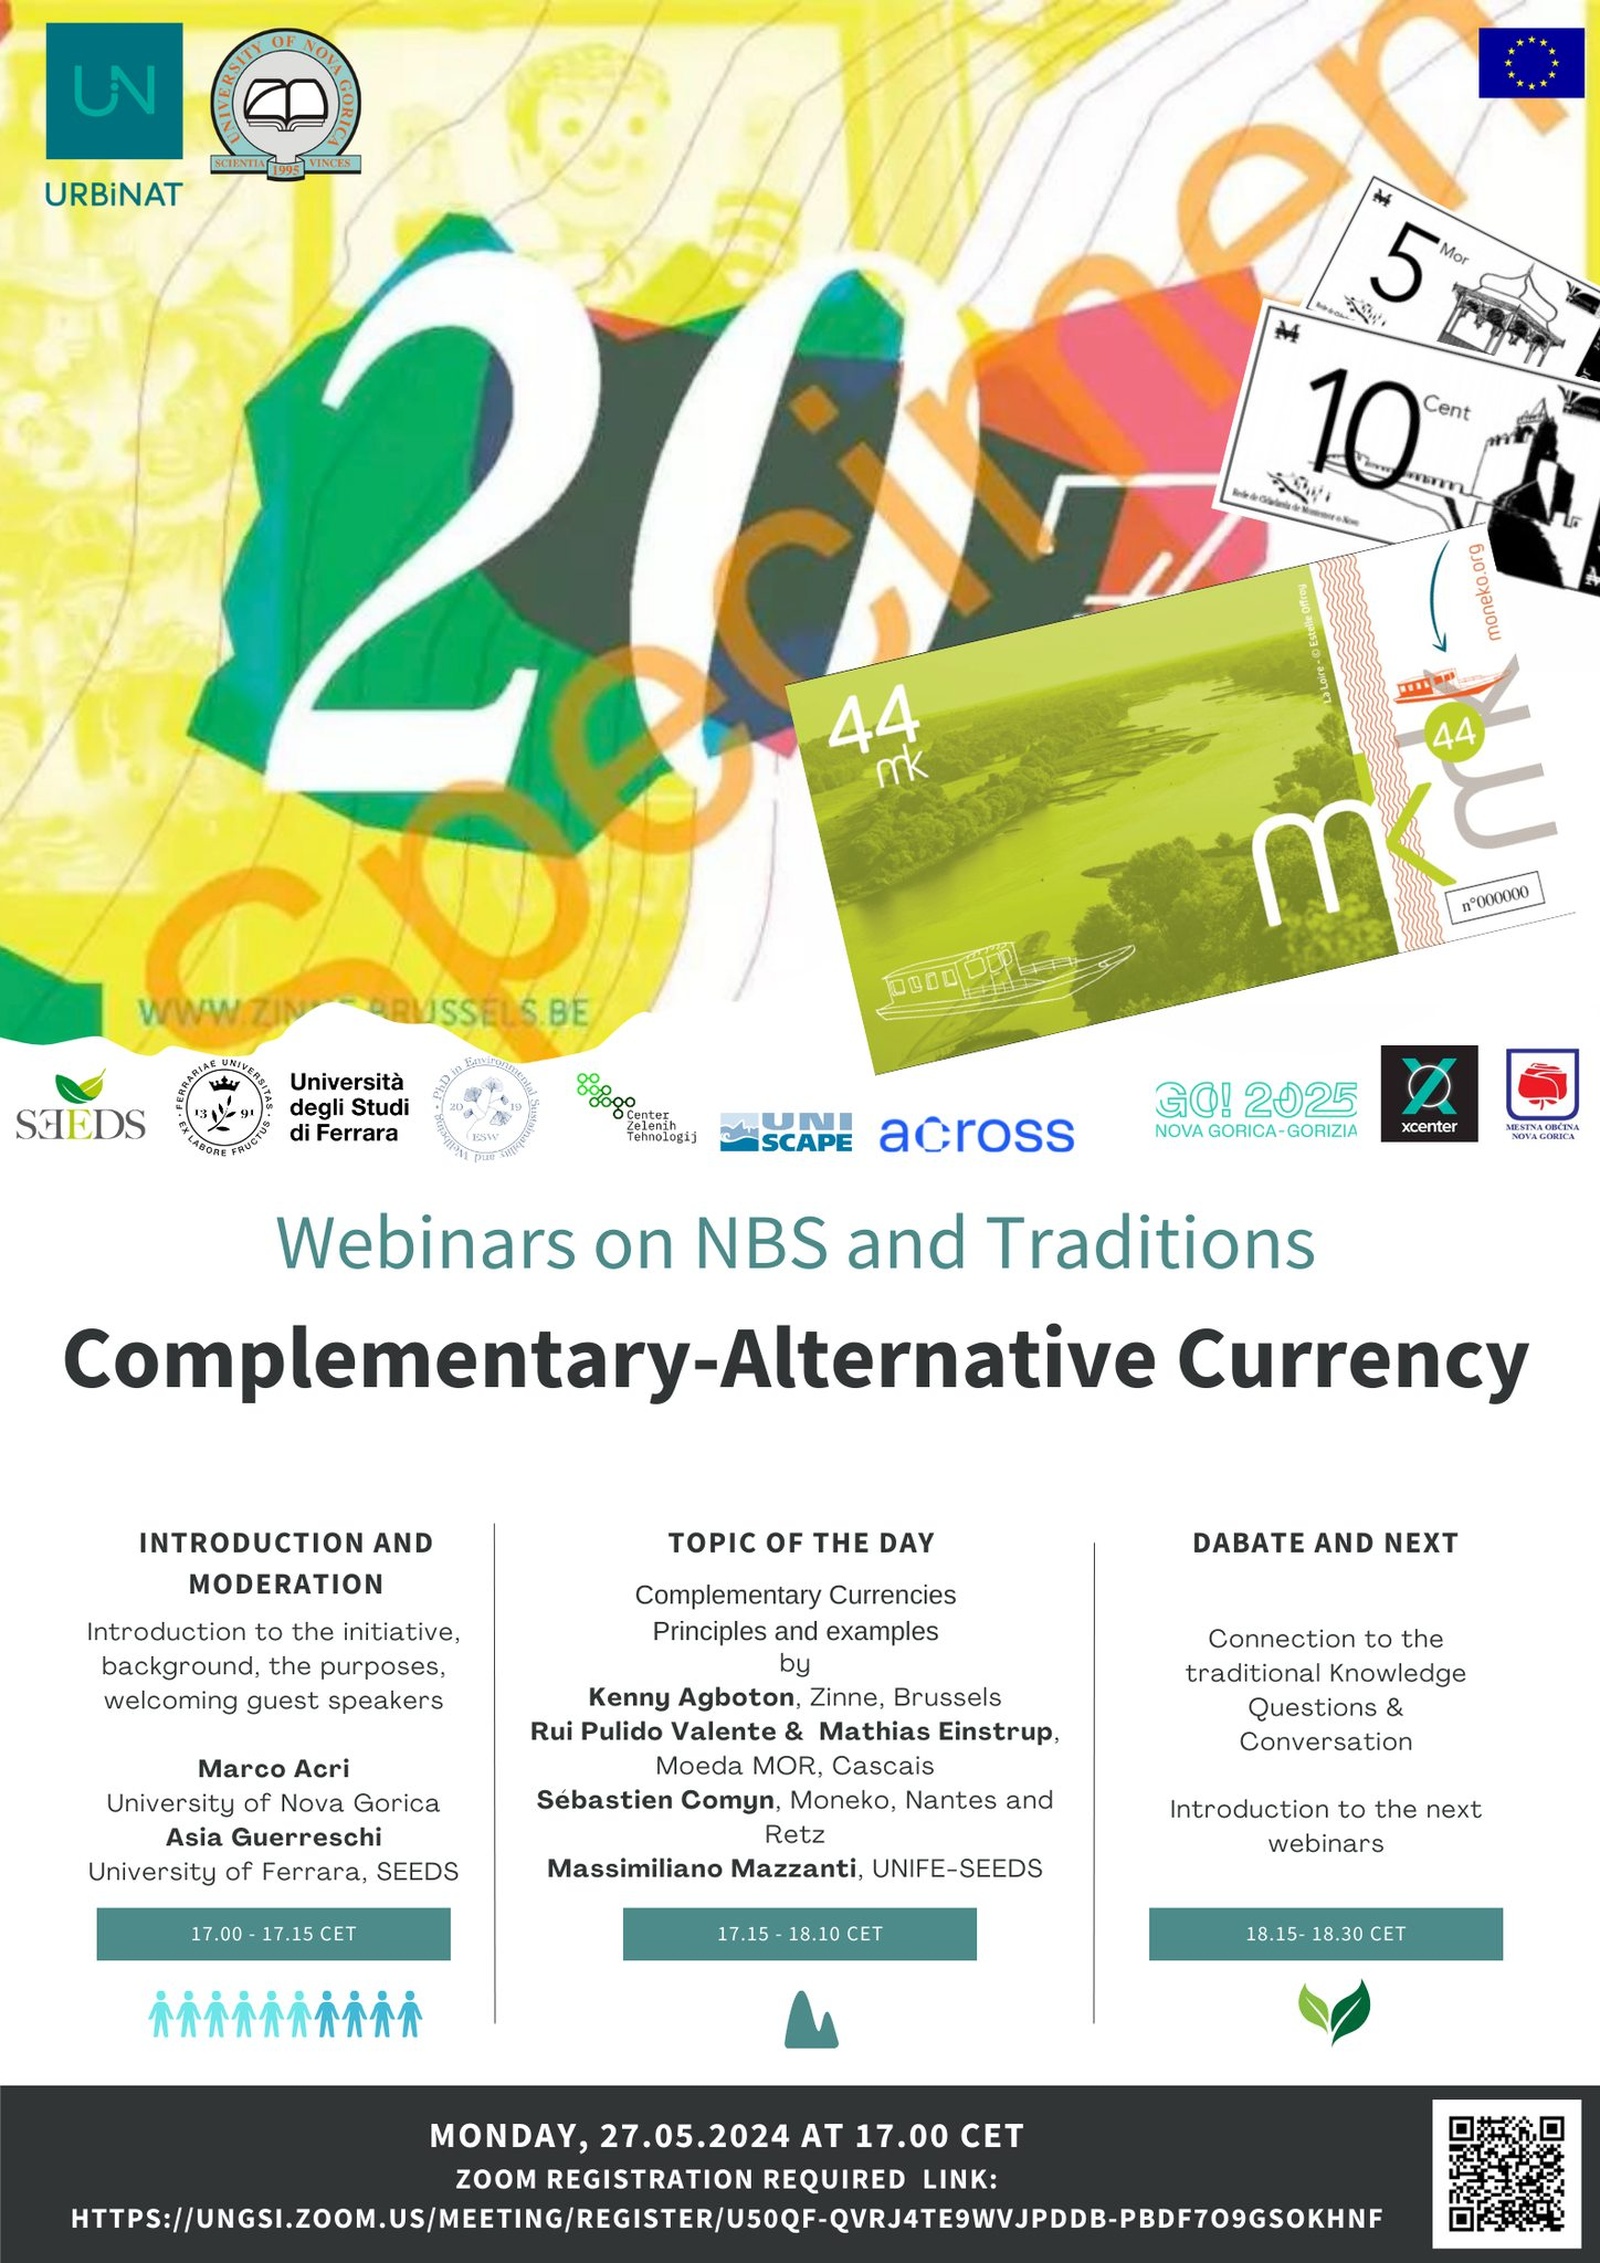 Vabilo na spletni dogodek Complementary-alternative Currency